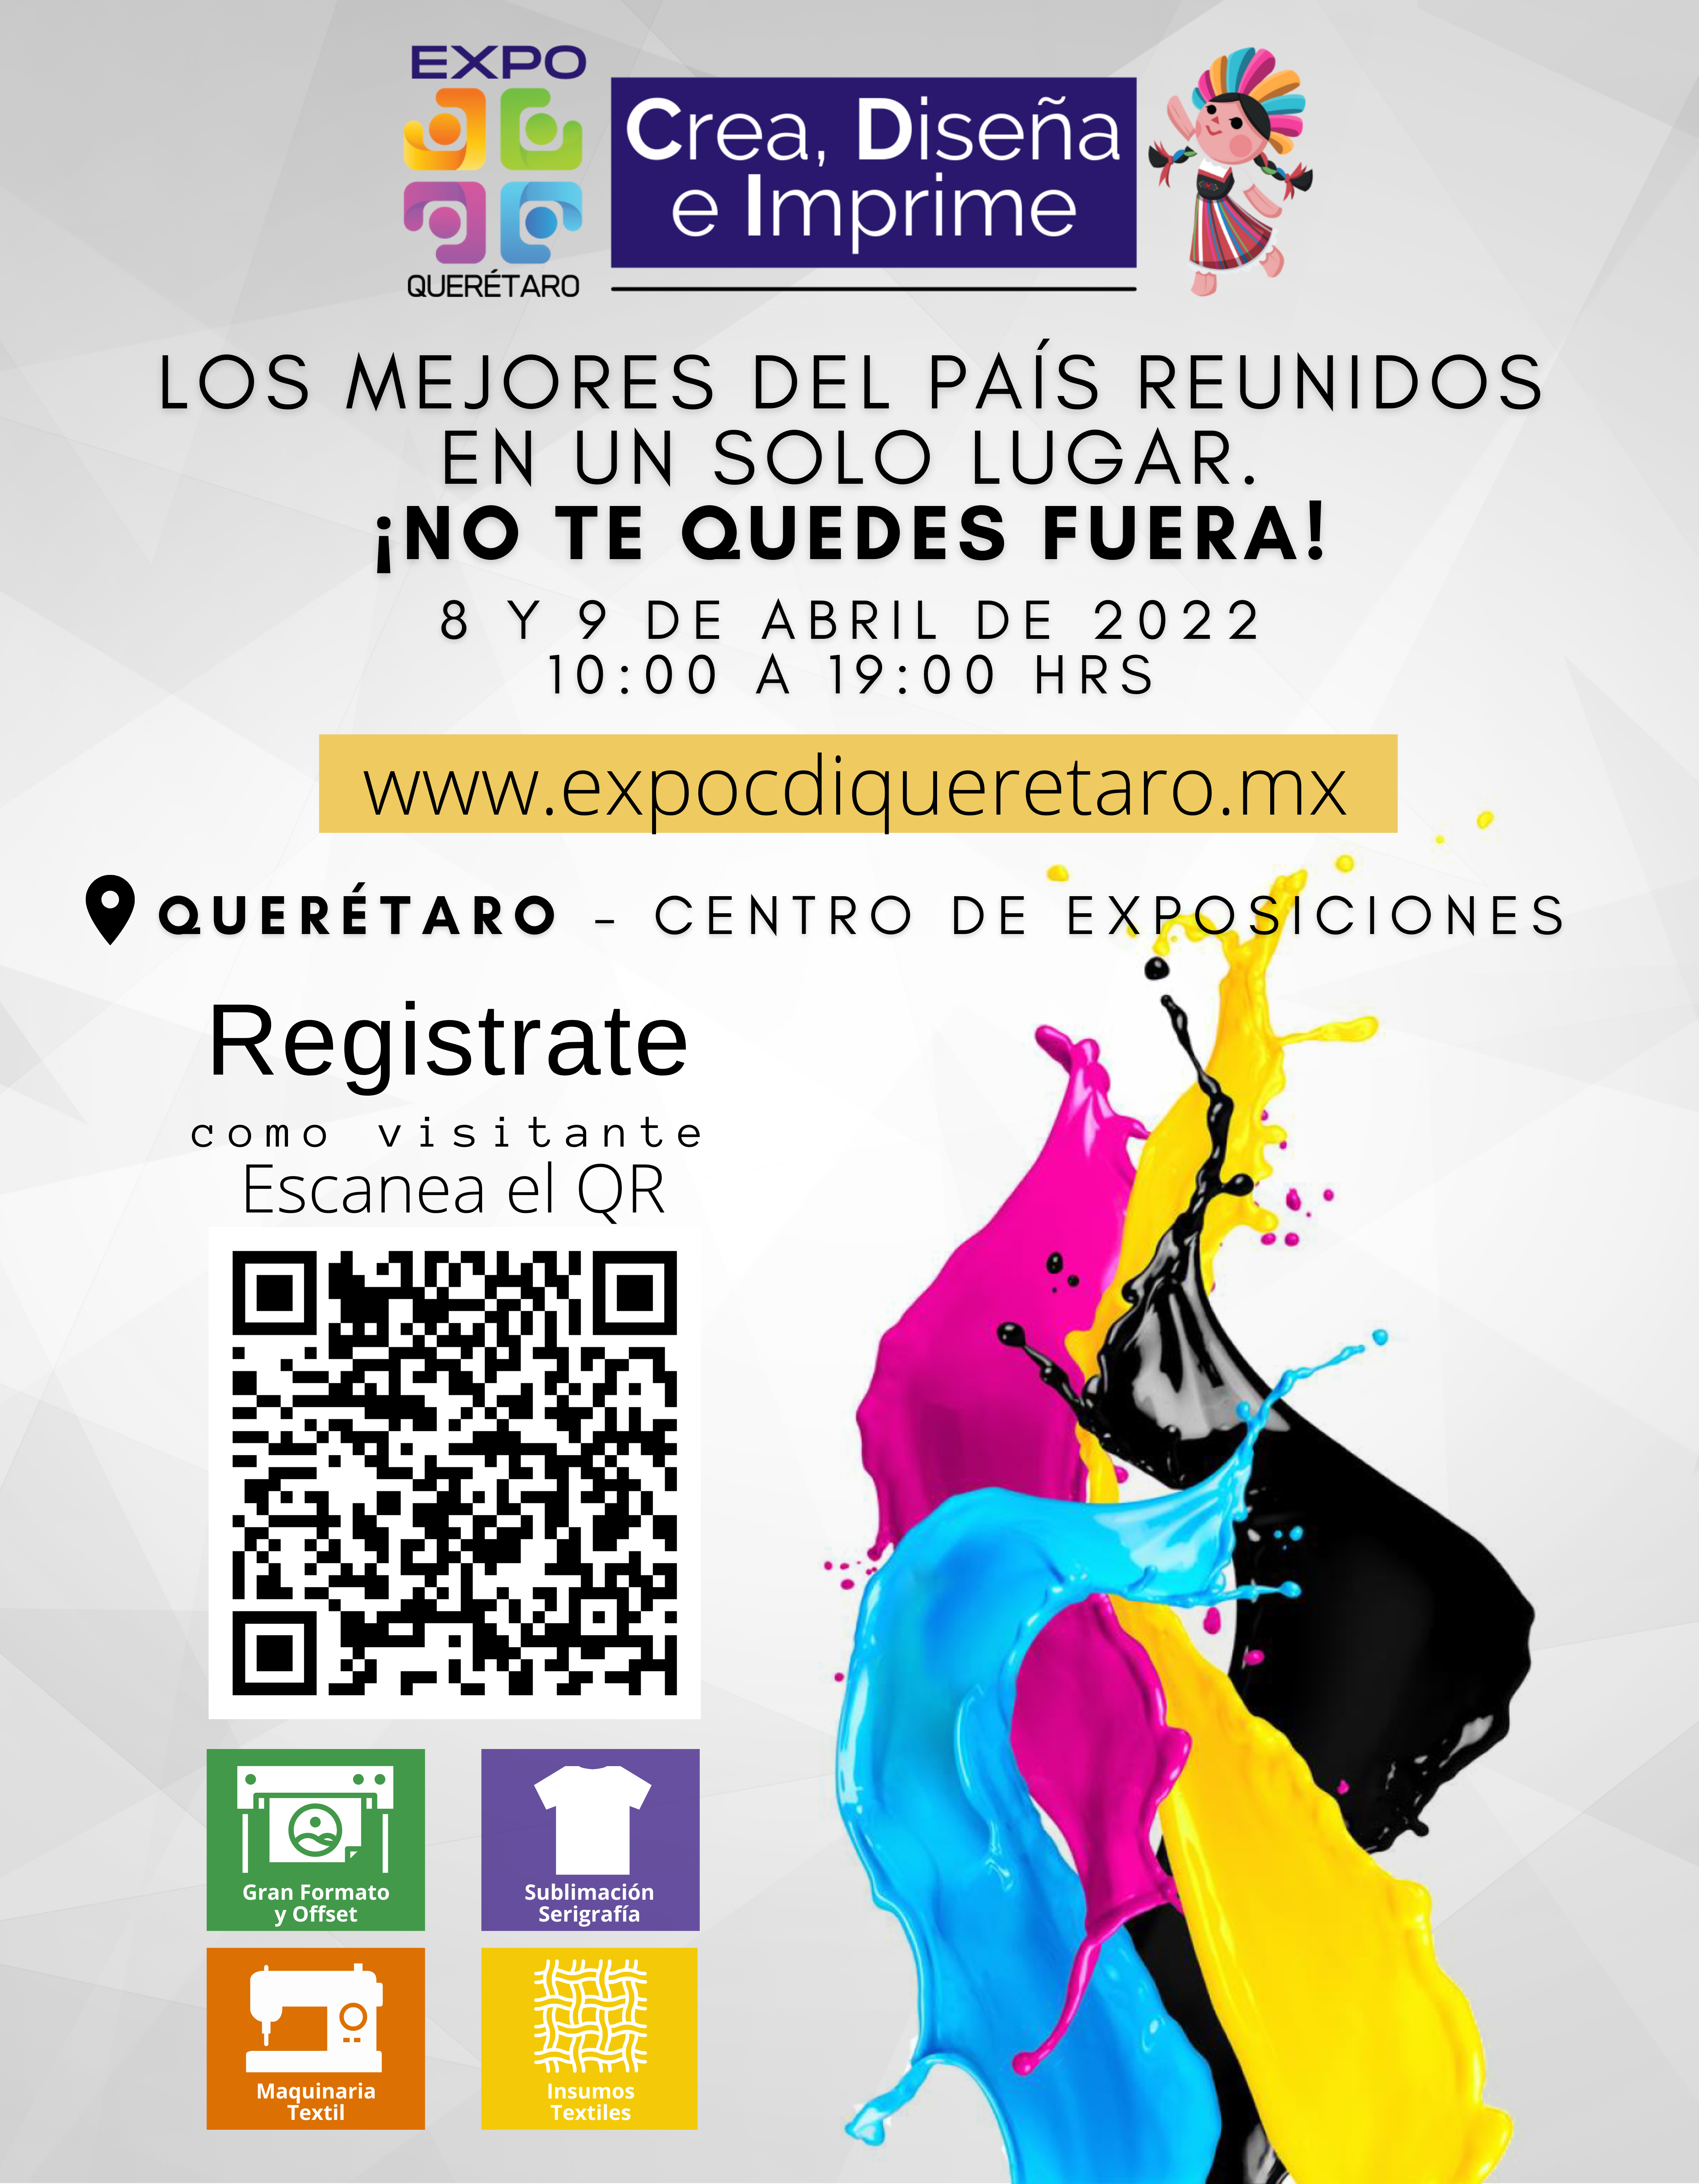 Expo Crea, Diseña e Imprime Querétaro 2022